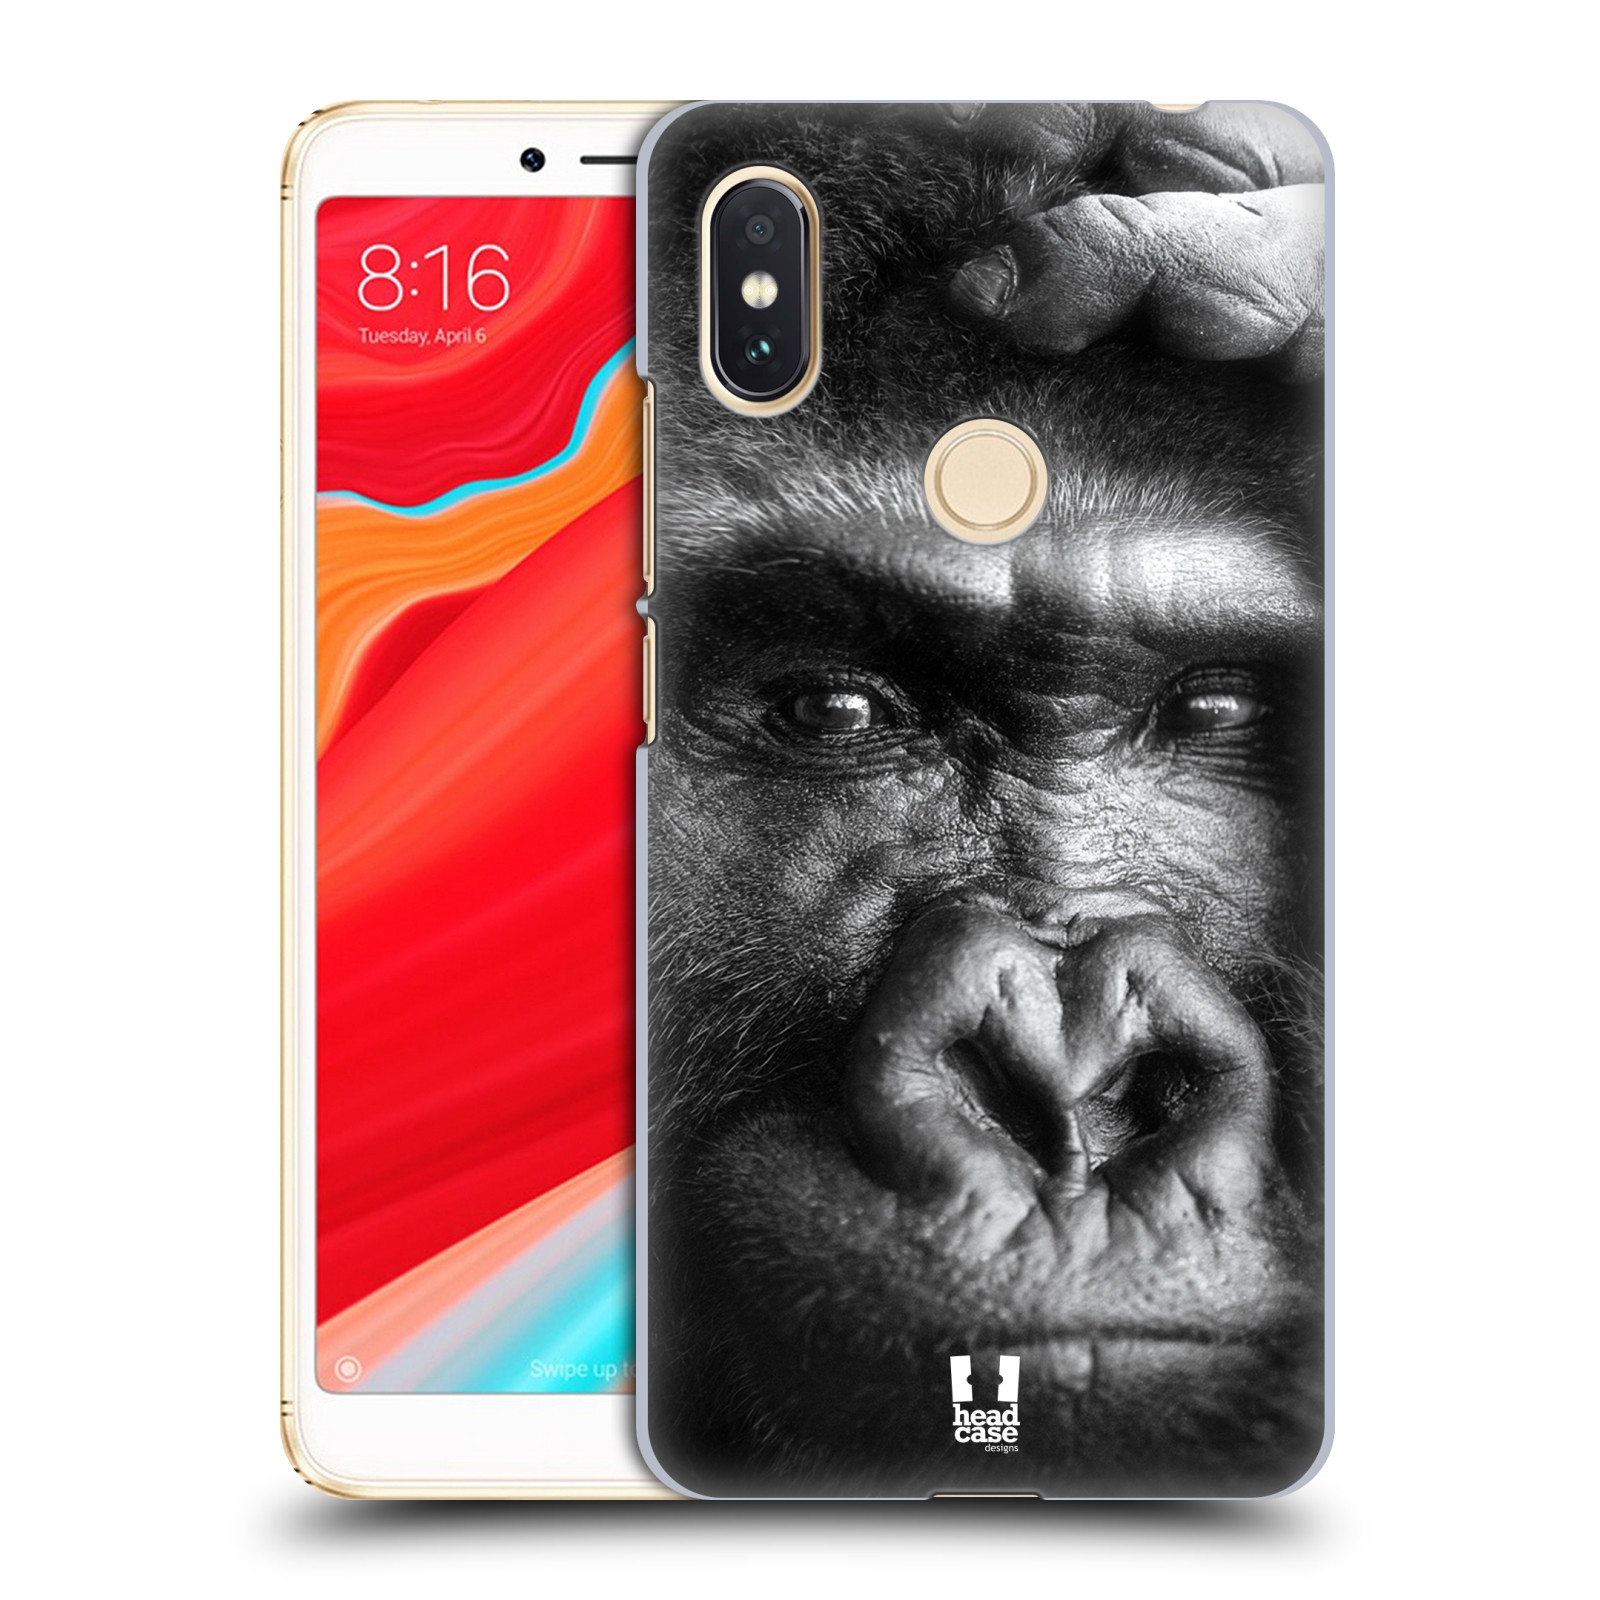 HEAD CASE plastový obal na mobil Xiaomi Redmi S2 vzor Divočina, Divoký život a zvířata foto GORILA TVÁŘ